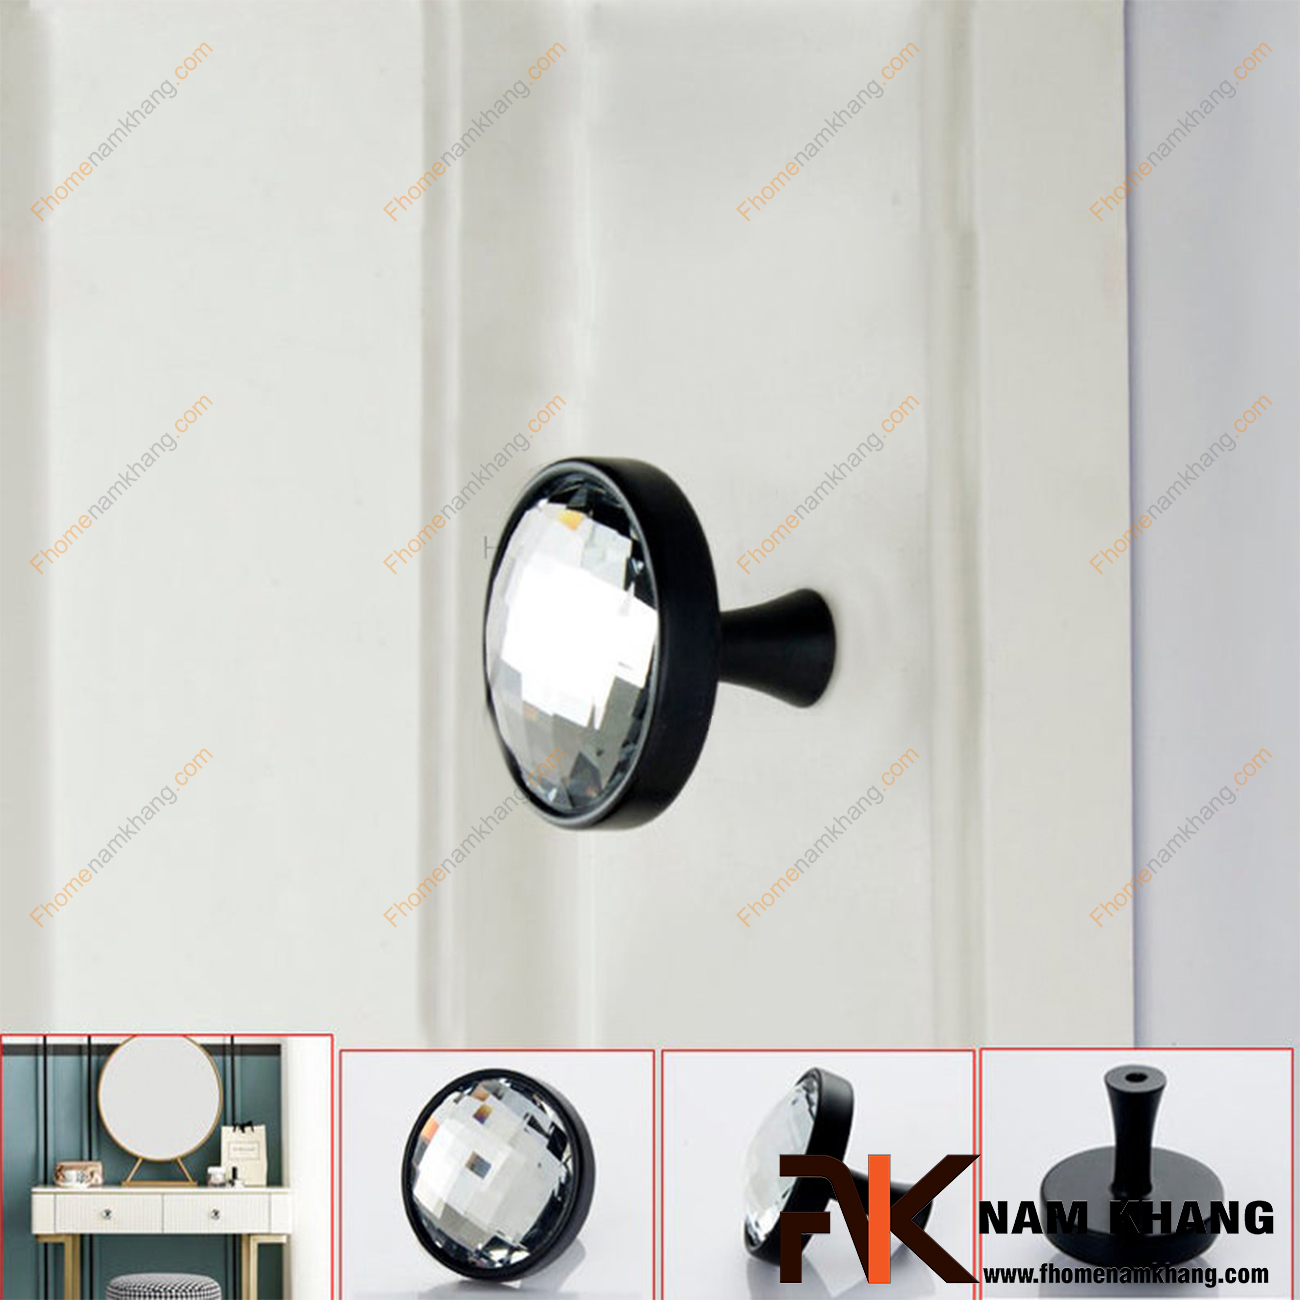 Là một sản phẩm núm cửa tủ có nét đẹp hiện đại, Núm cửa tủ dạng tròn phối pha lê NK435-DTD có sự kết hợp các họa tiết vân đá khá nổi bật, điều này tạo cho người sử dụng một cảm giác thu hút khó tả.